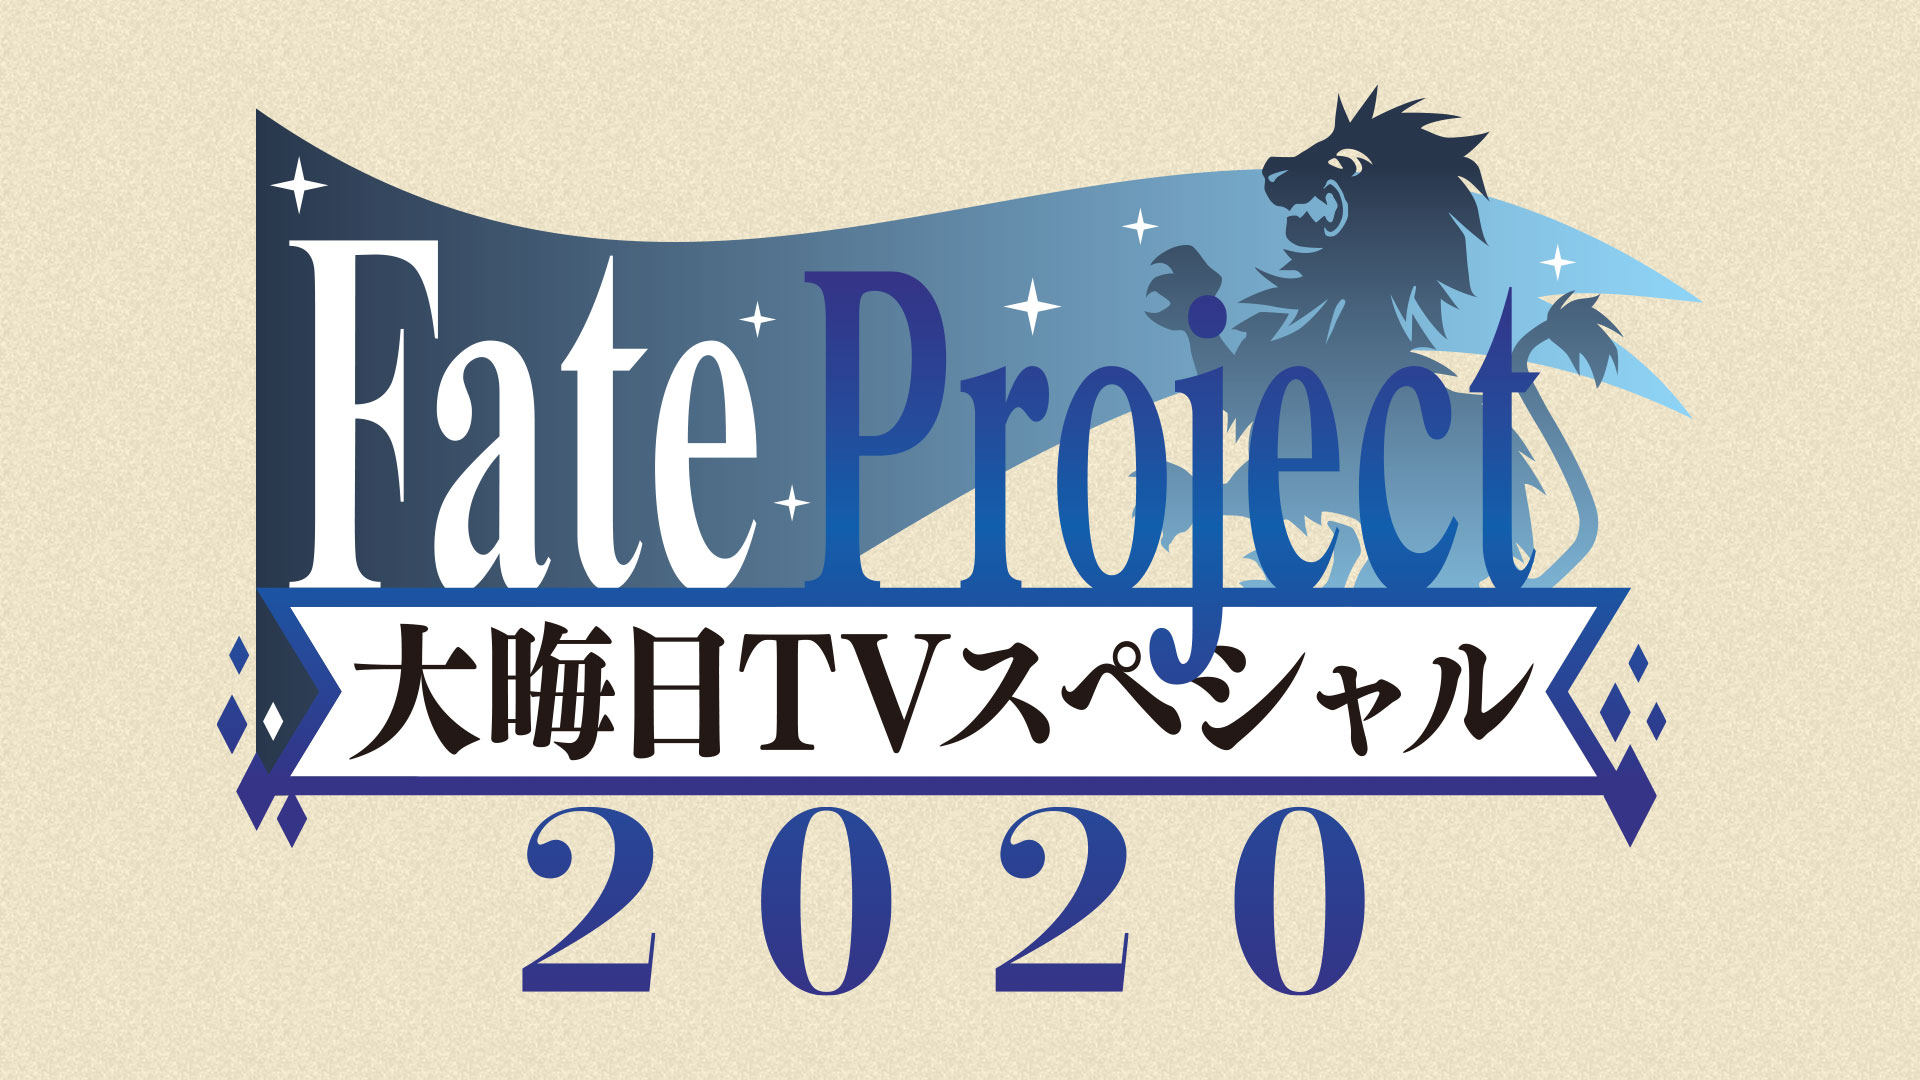 Fate Project 大晦日TVスペシャル2020